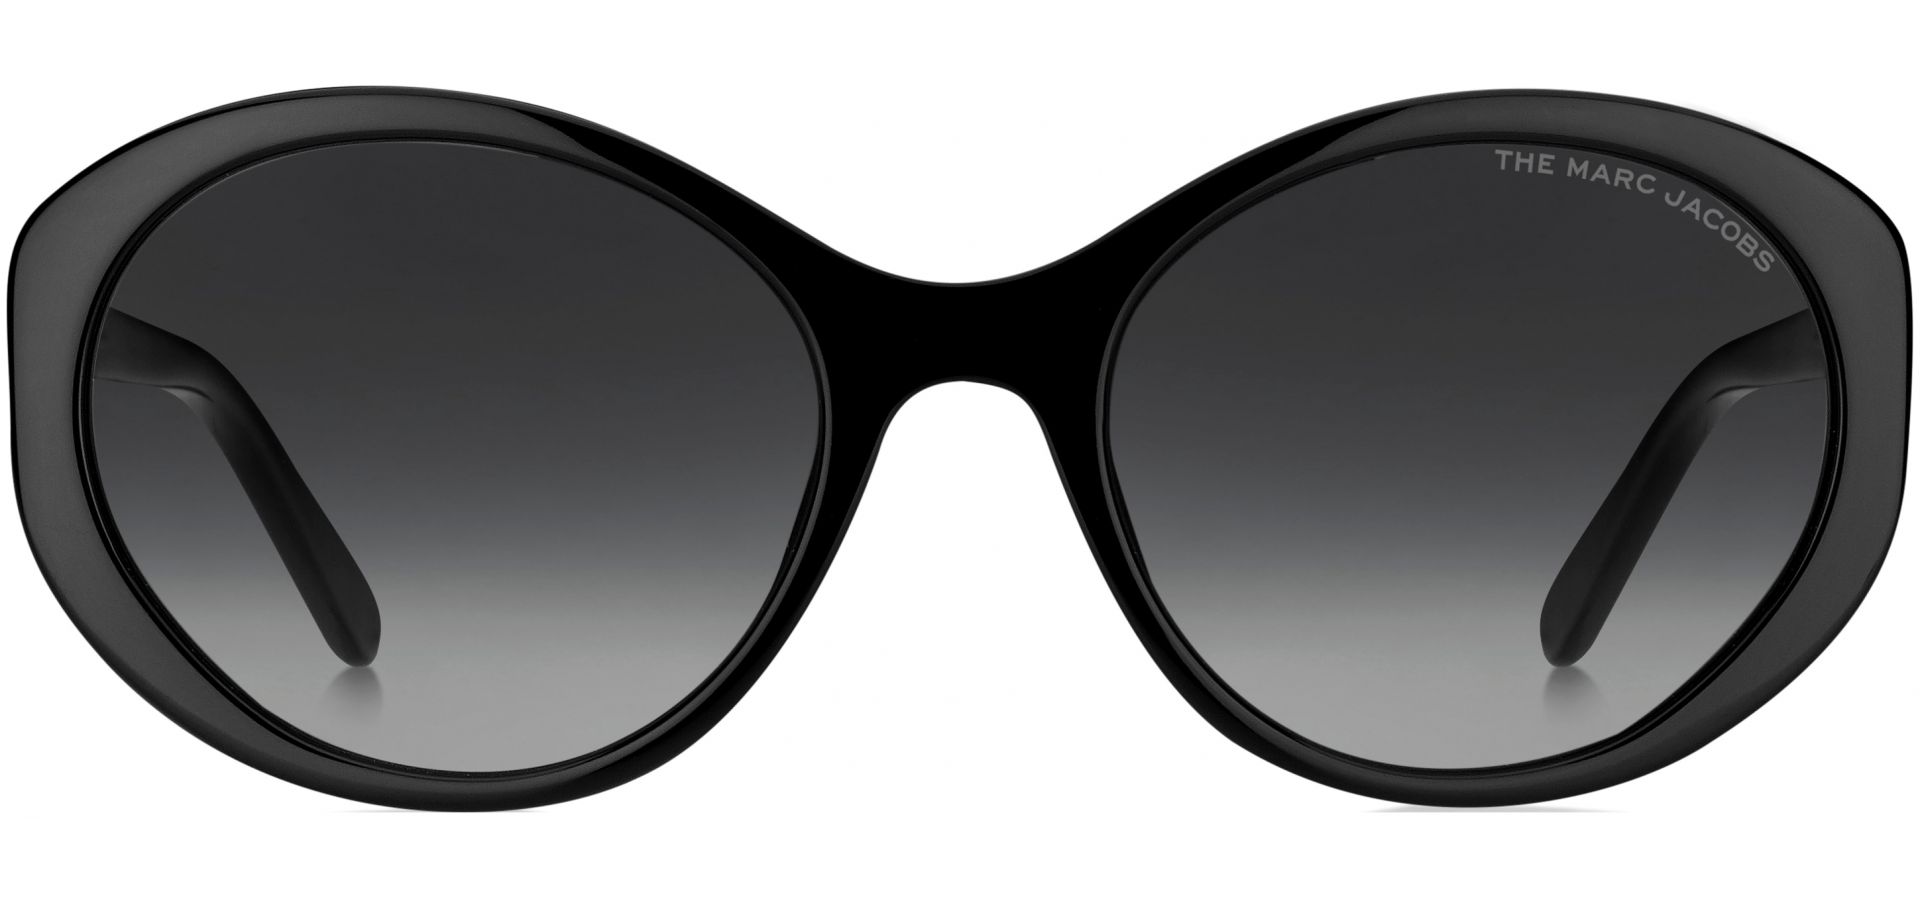 Sunčane naočale Marc Jacobs MARC 520: Boja: BLACK, Veličina: 56-20-140, Spol: ženske, Materijal: acetat